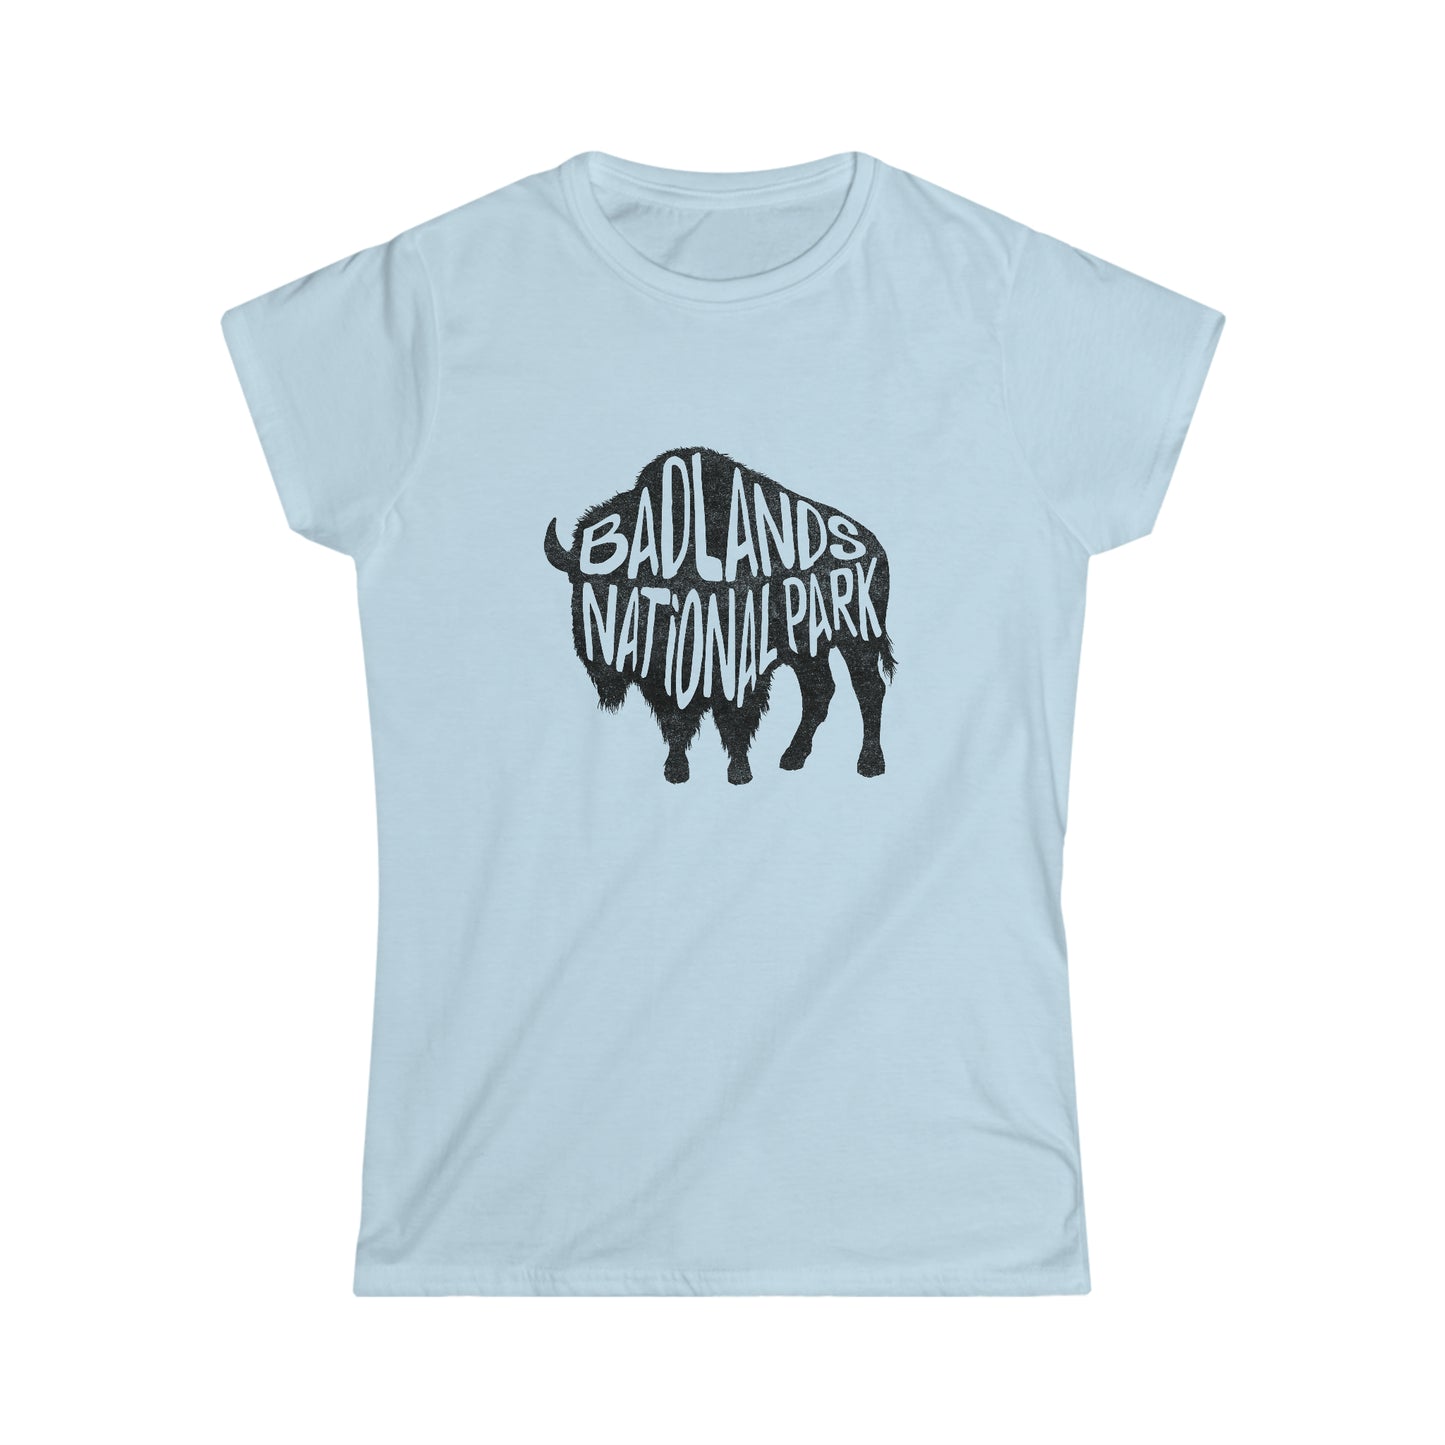 Badlands National Park Women's T-Shirt - Bison